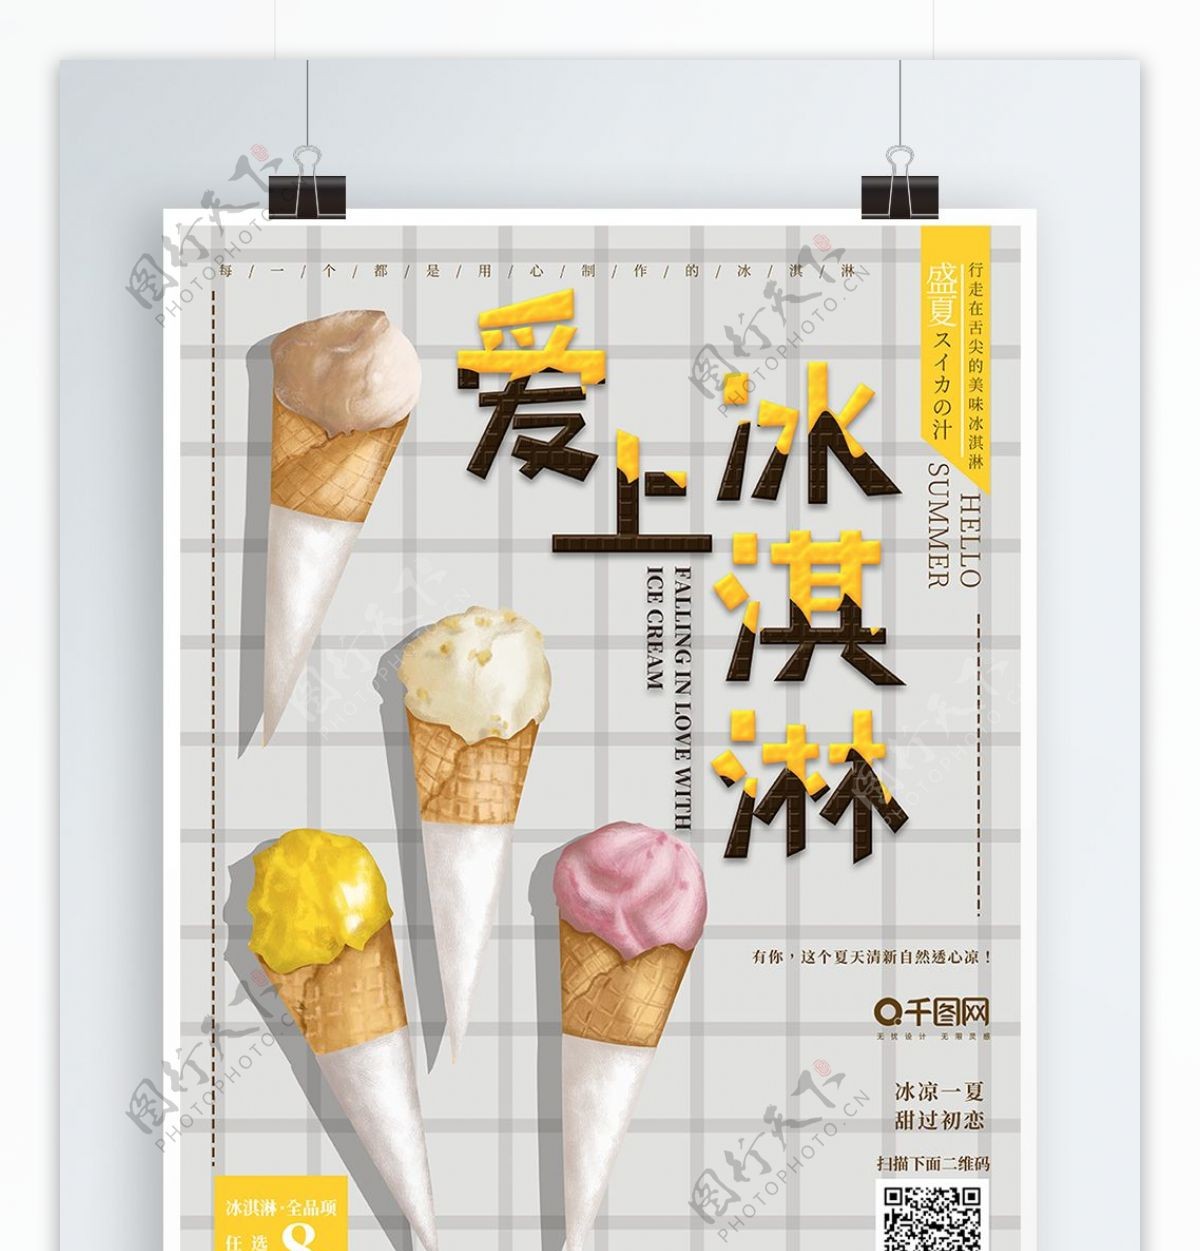 原创手绘插画可爱冰淇淋甜筒海报